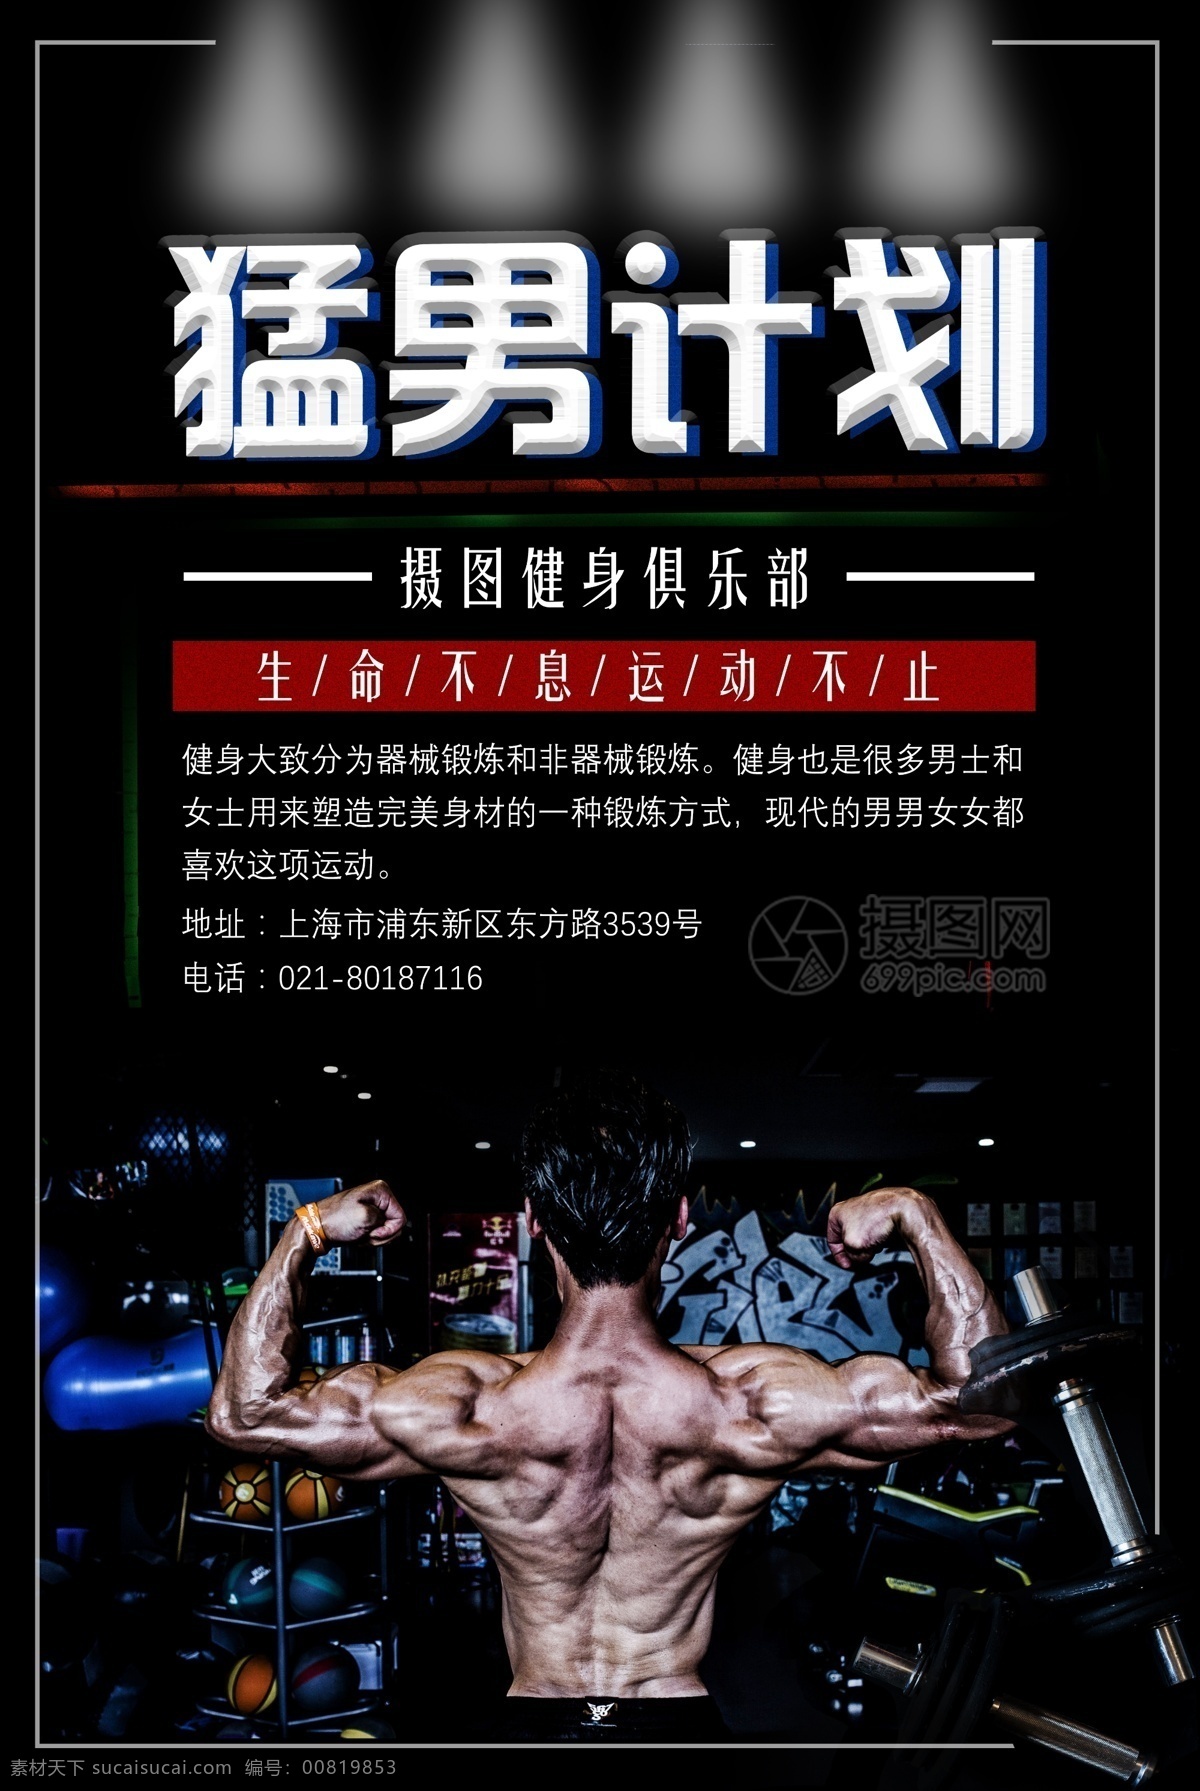 猛男 计划 健身 运动 海报 有氧运动 肌肉 猛男训练 健身房 健身运动海报 减肥 私教 塑身 瘦身 身材 体形 教练 专业 生命在于运动 健身俱乐部